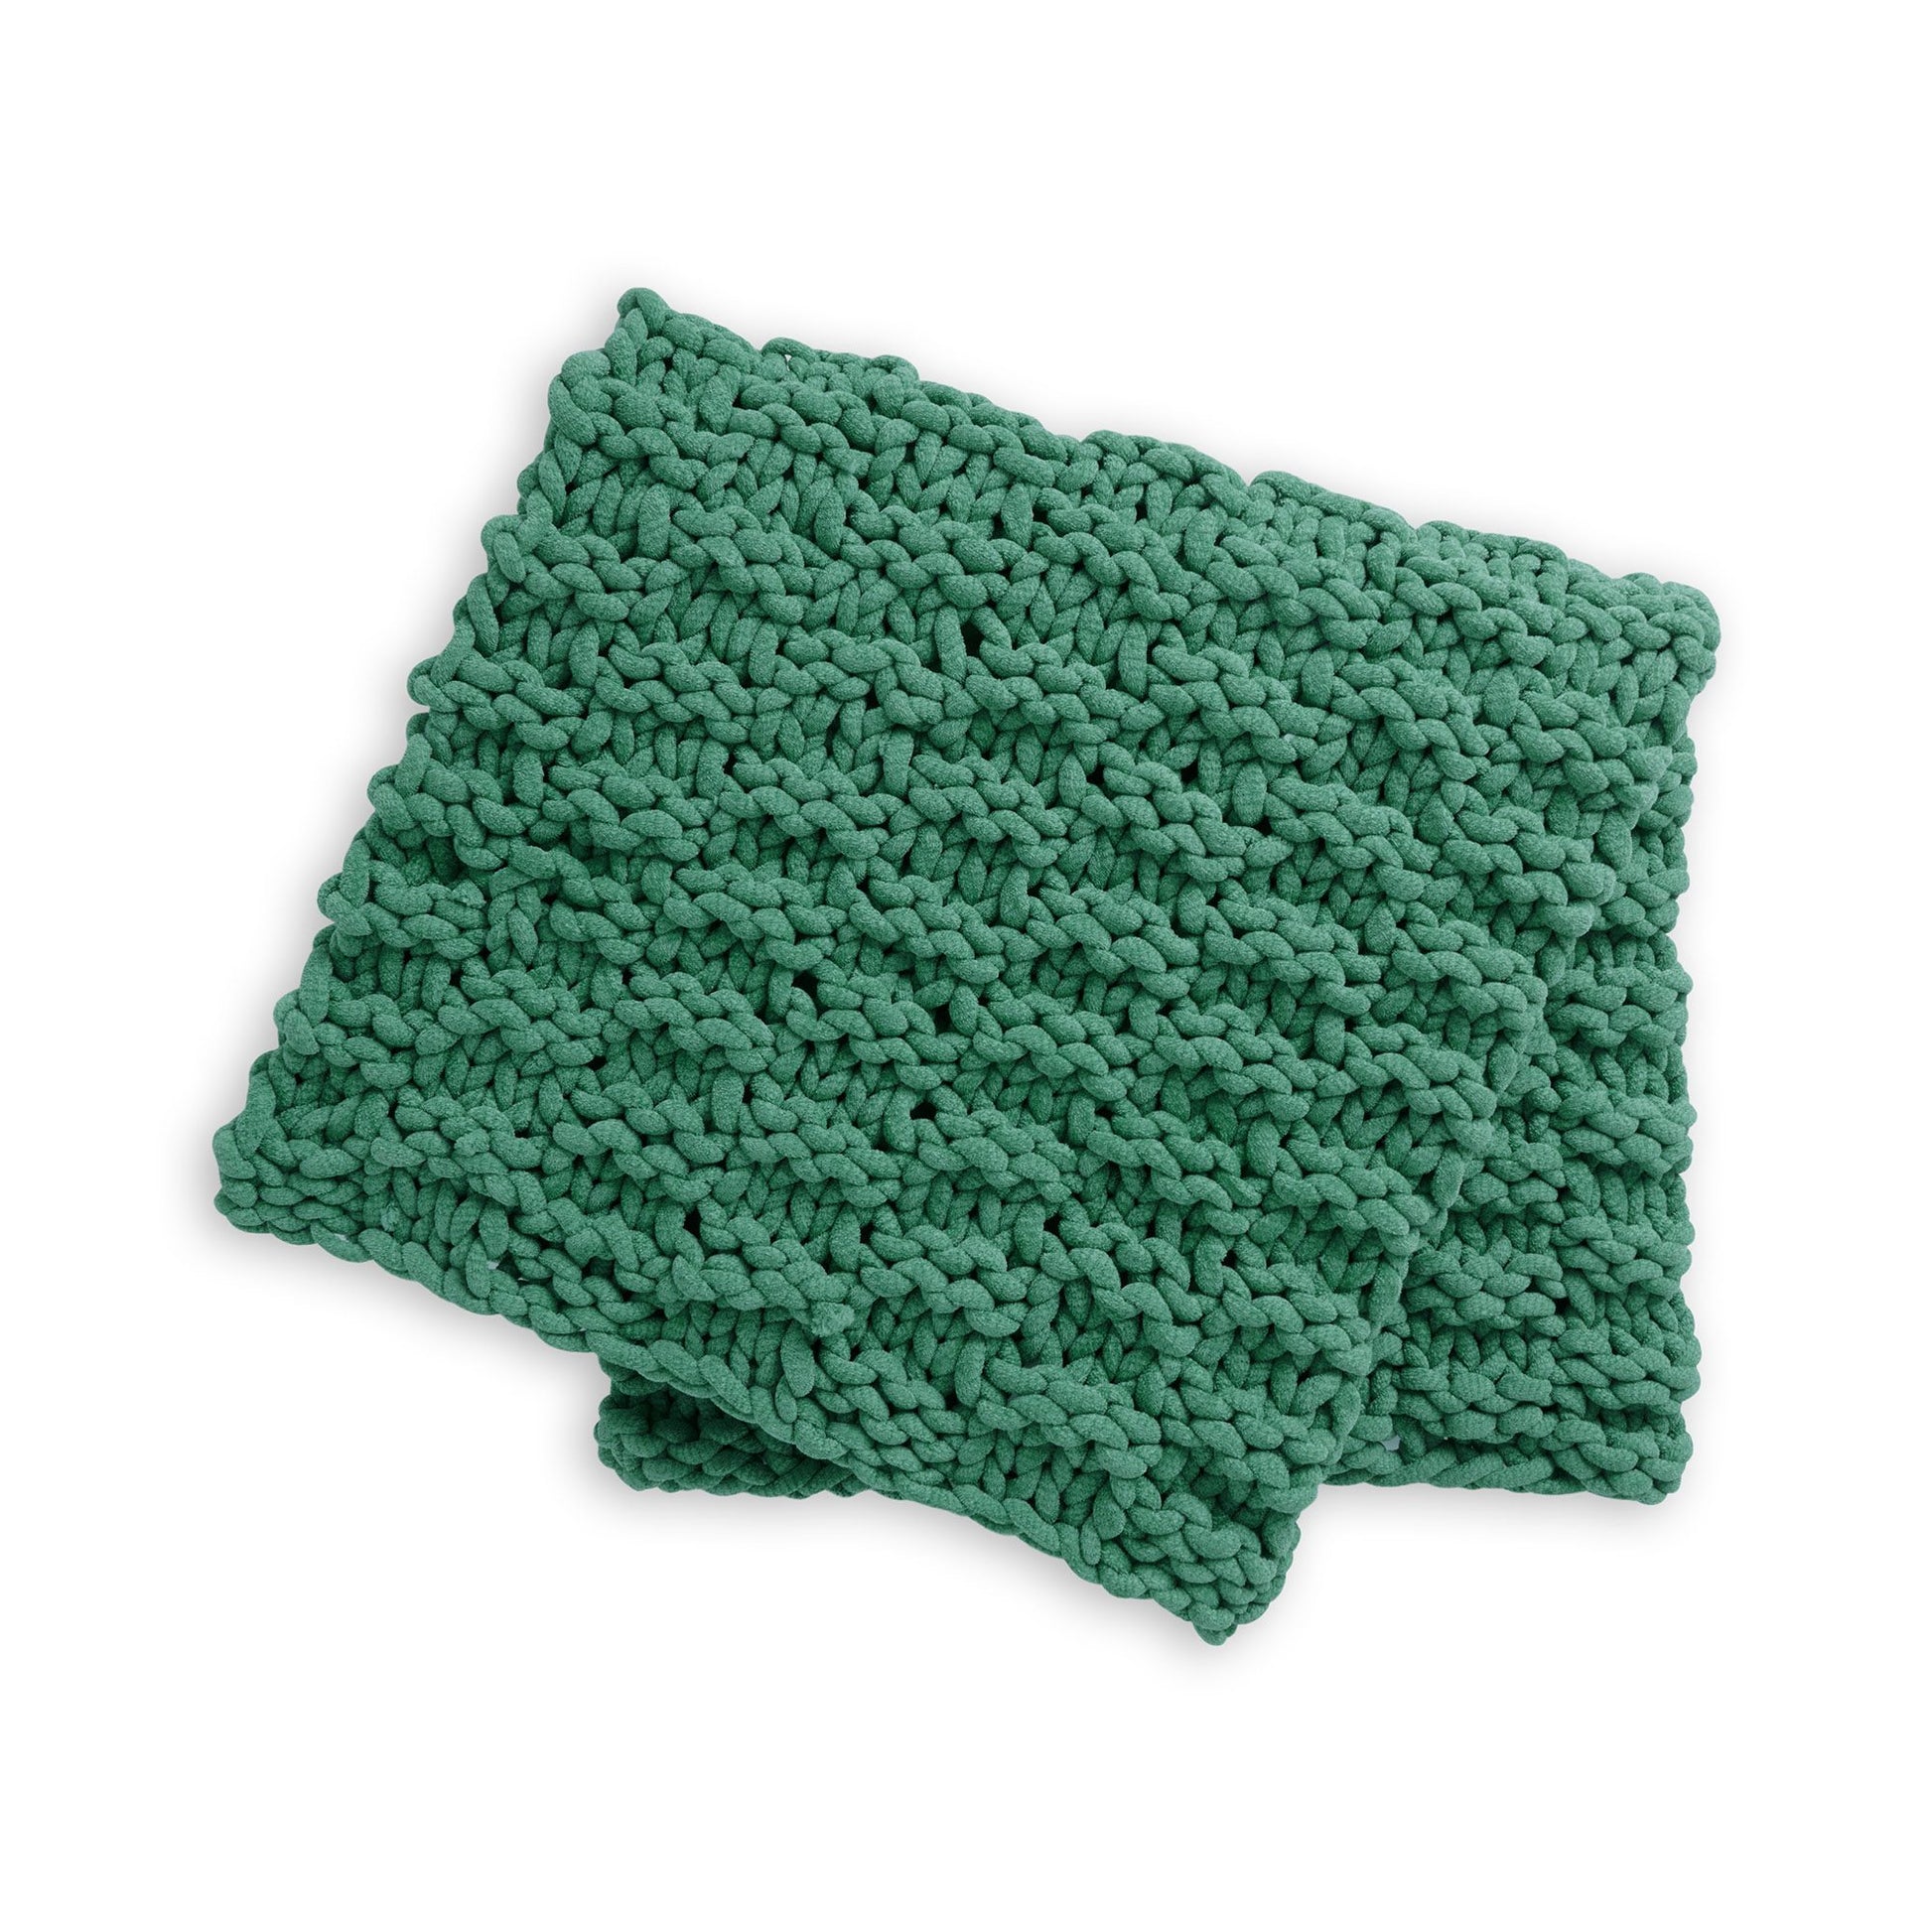 Free Bernat Big Plush Basketweave Knit Blanket Pattern